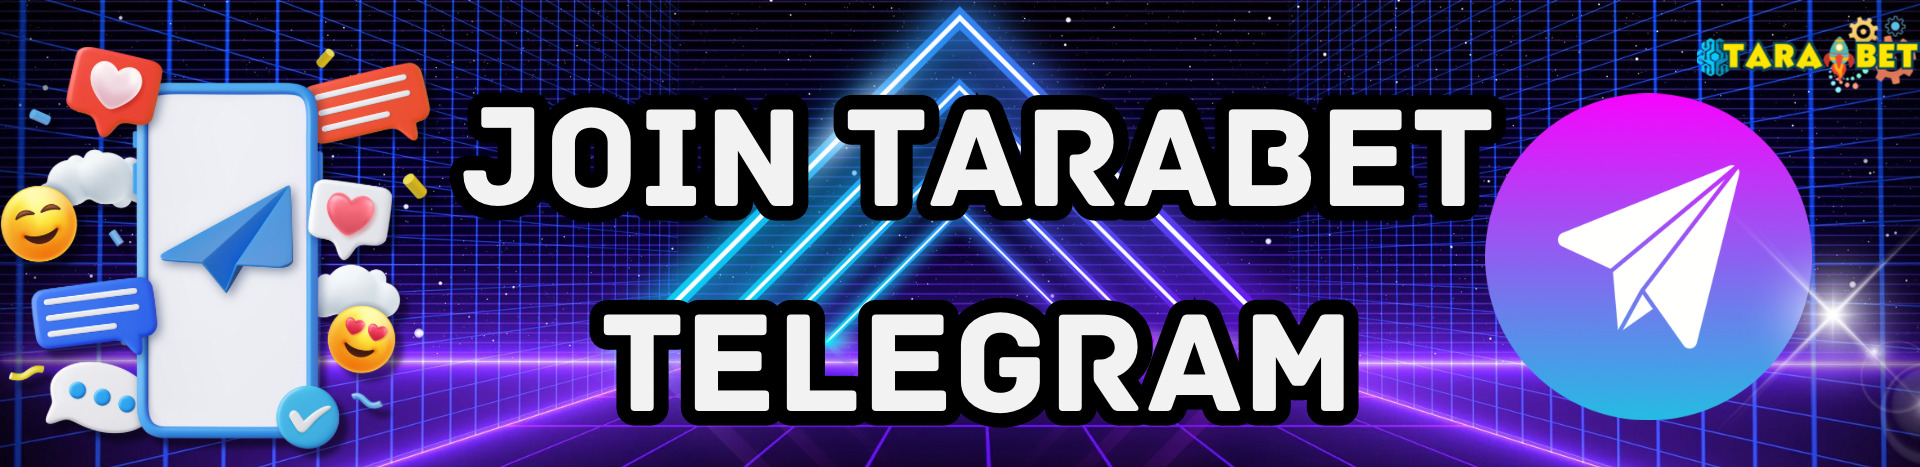 telegram_promotional-banner